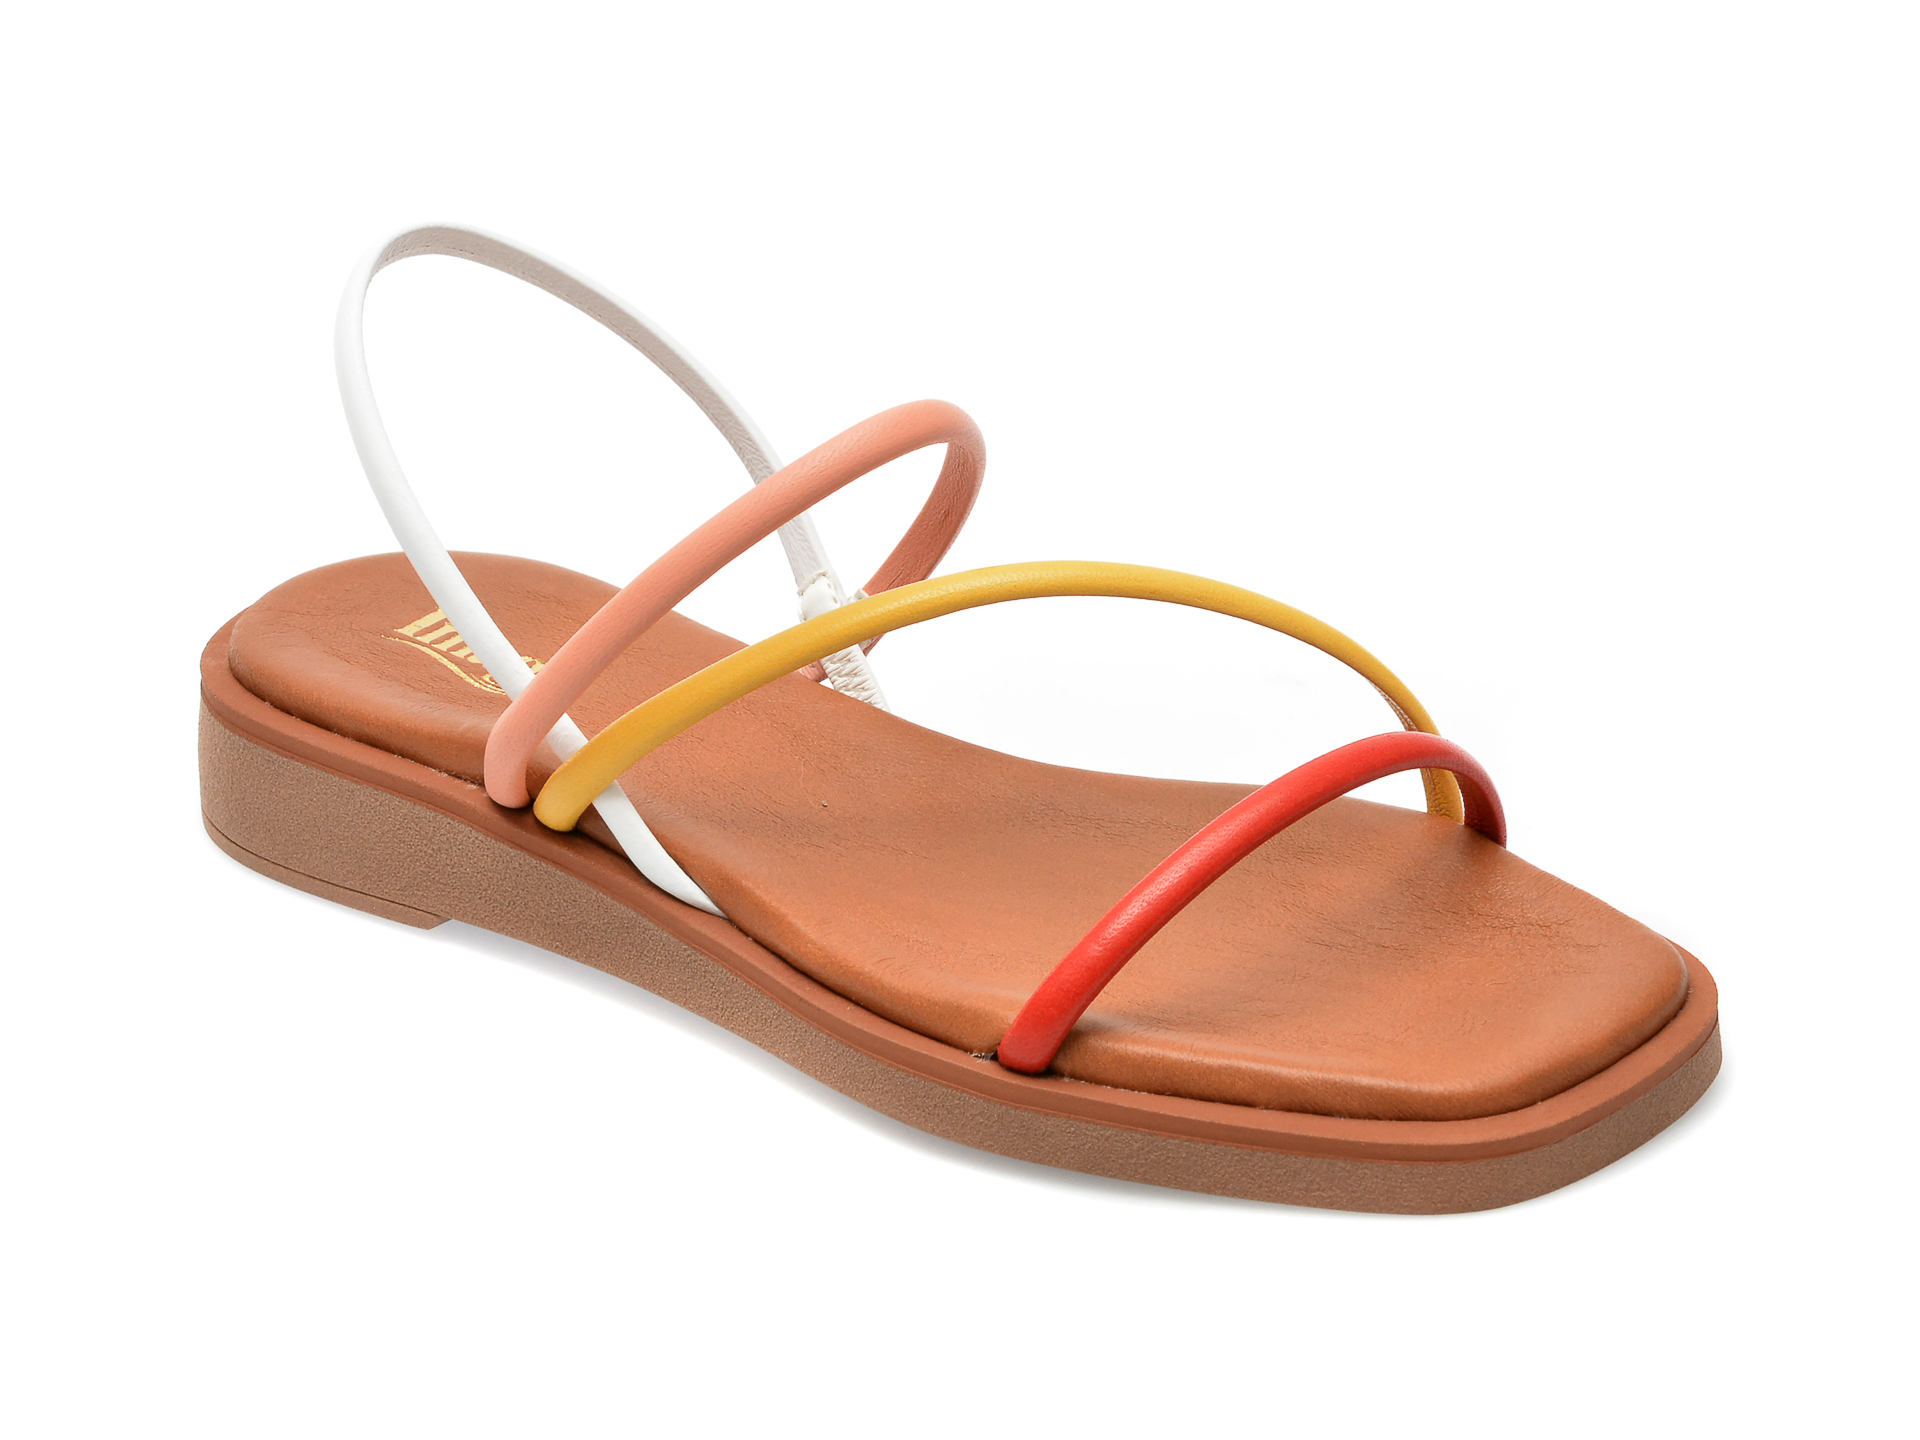 Sandale IMAGE multicolor, CAMILA, din piele naturala /sale imagine super redus 2022